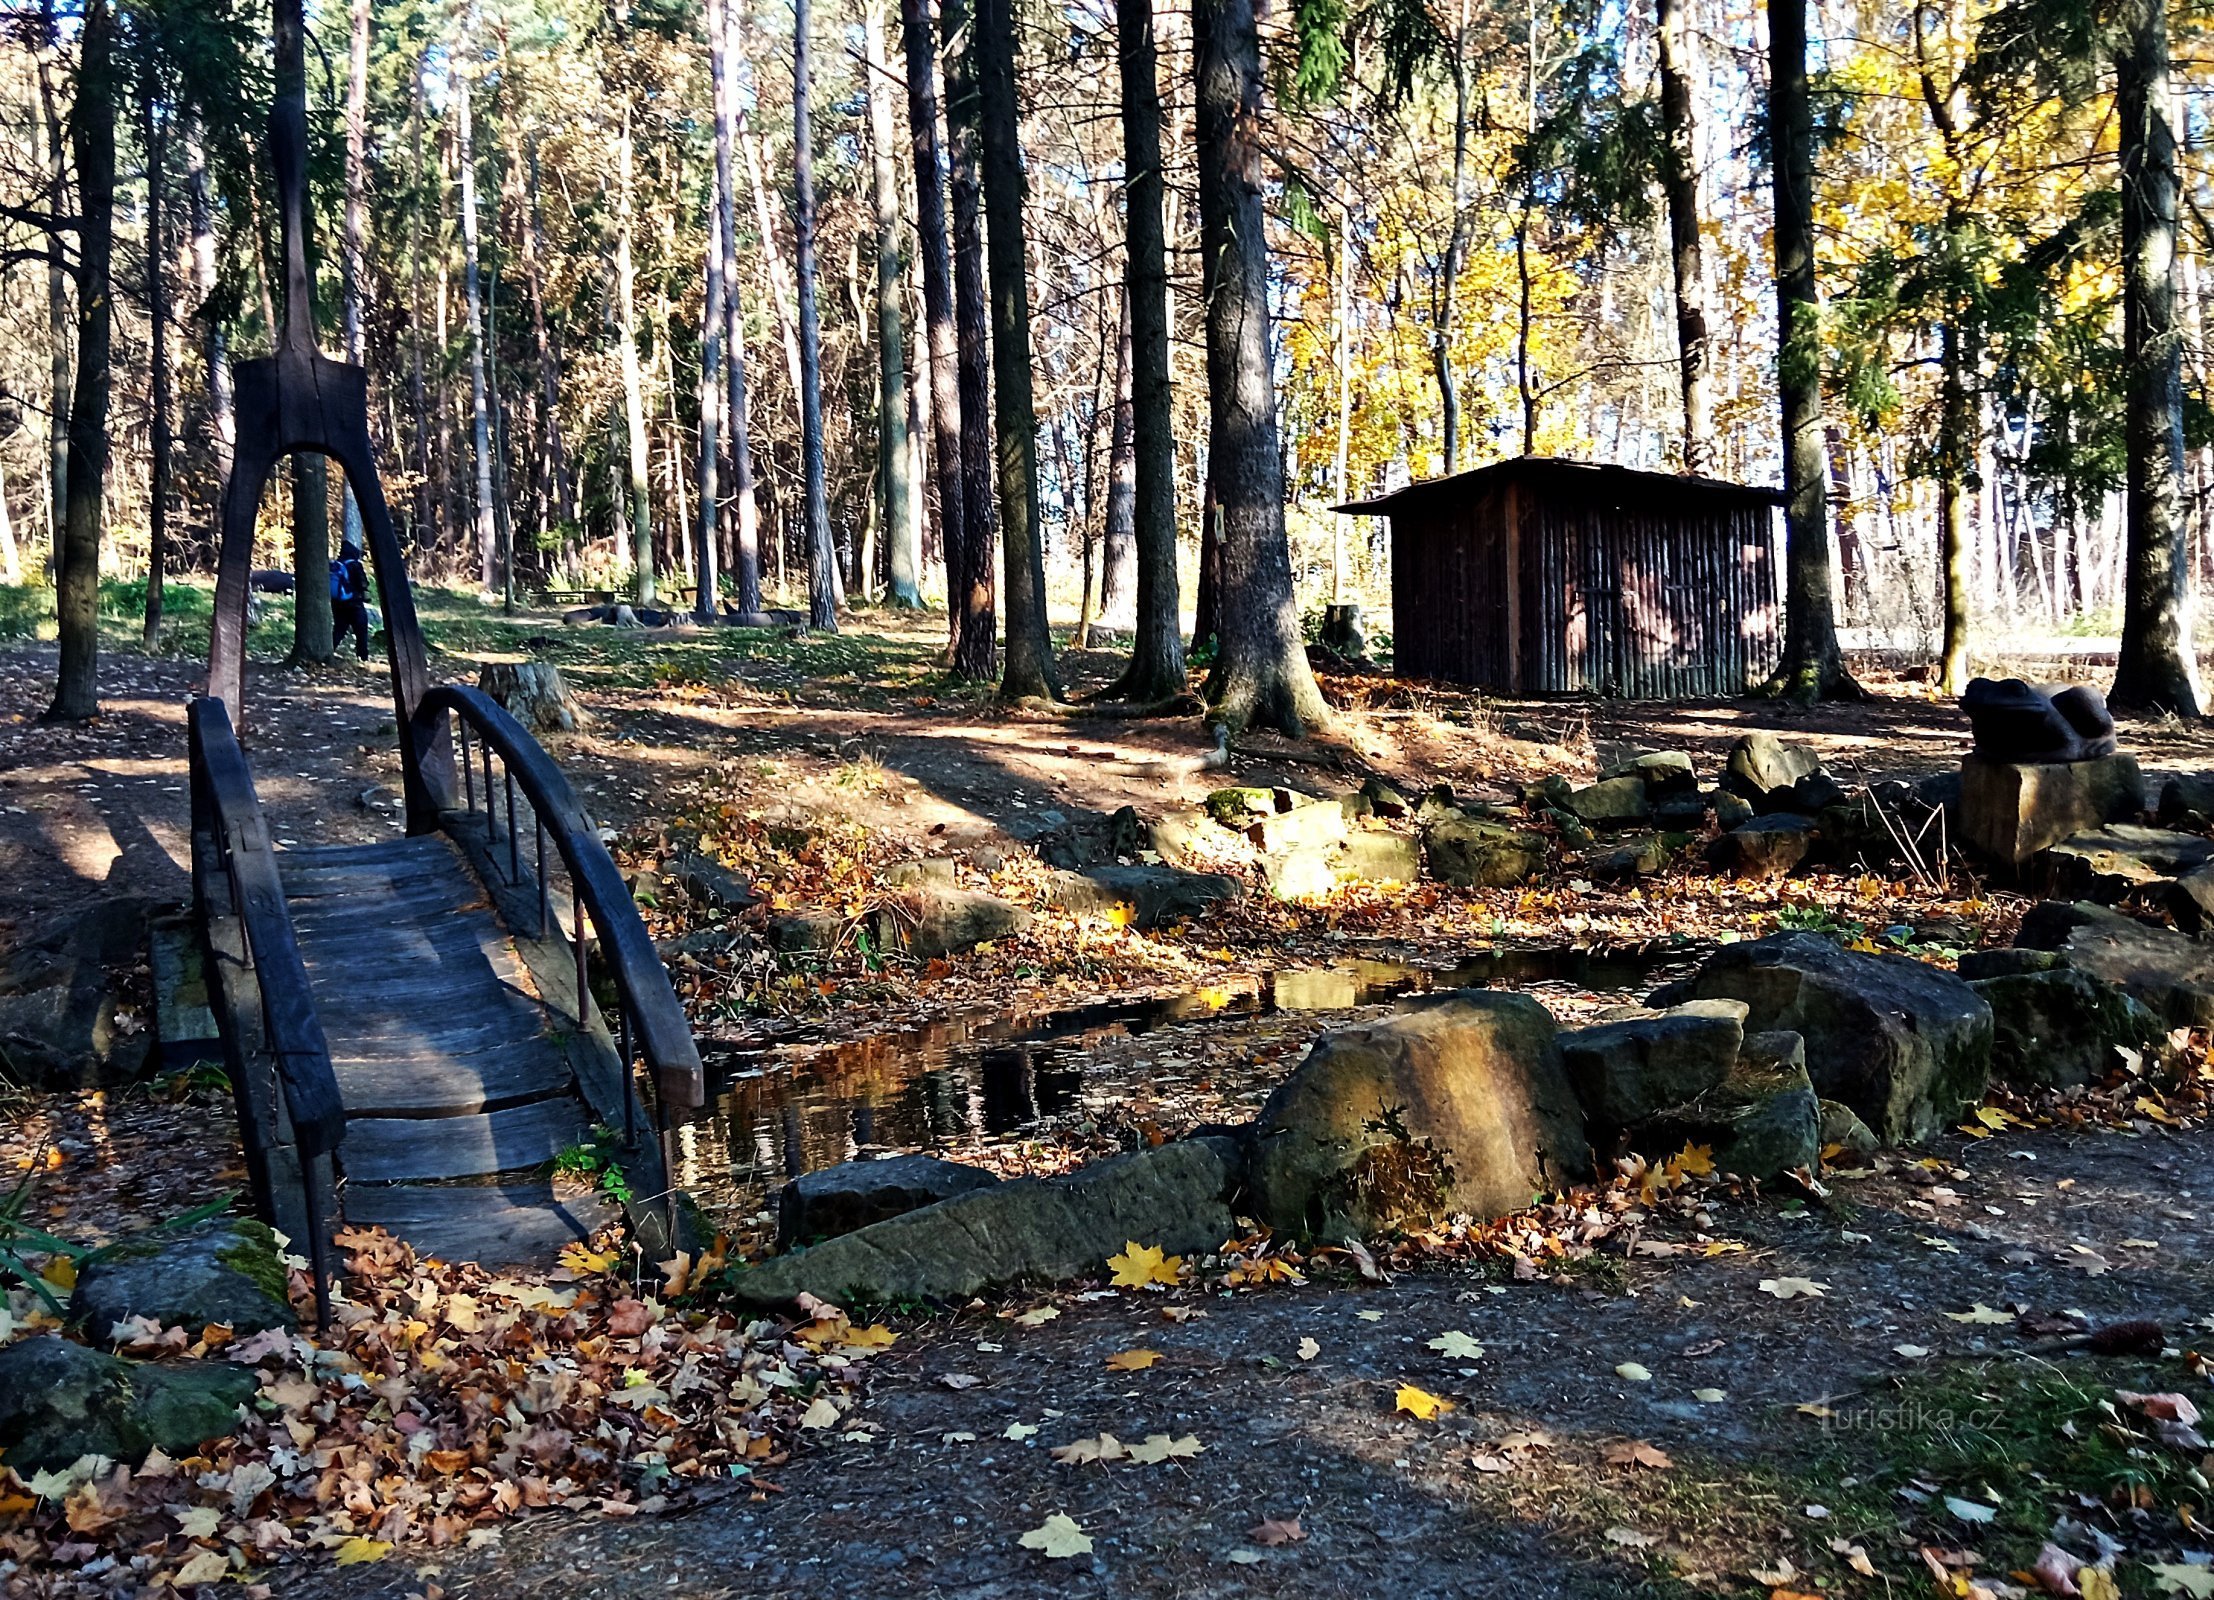 Pivečk 森林公园，在 Slavičín 有人工废墟